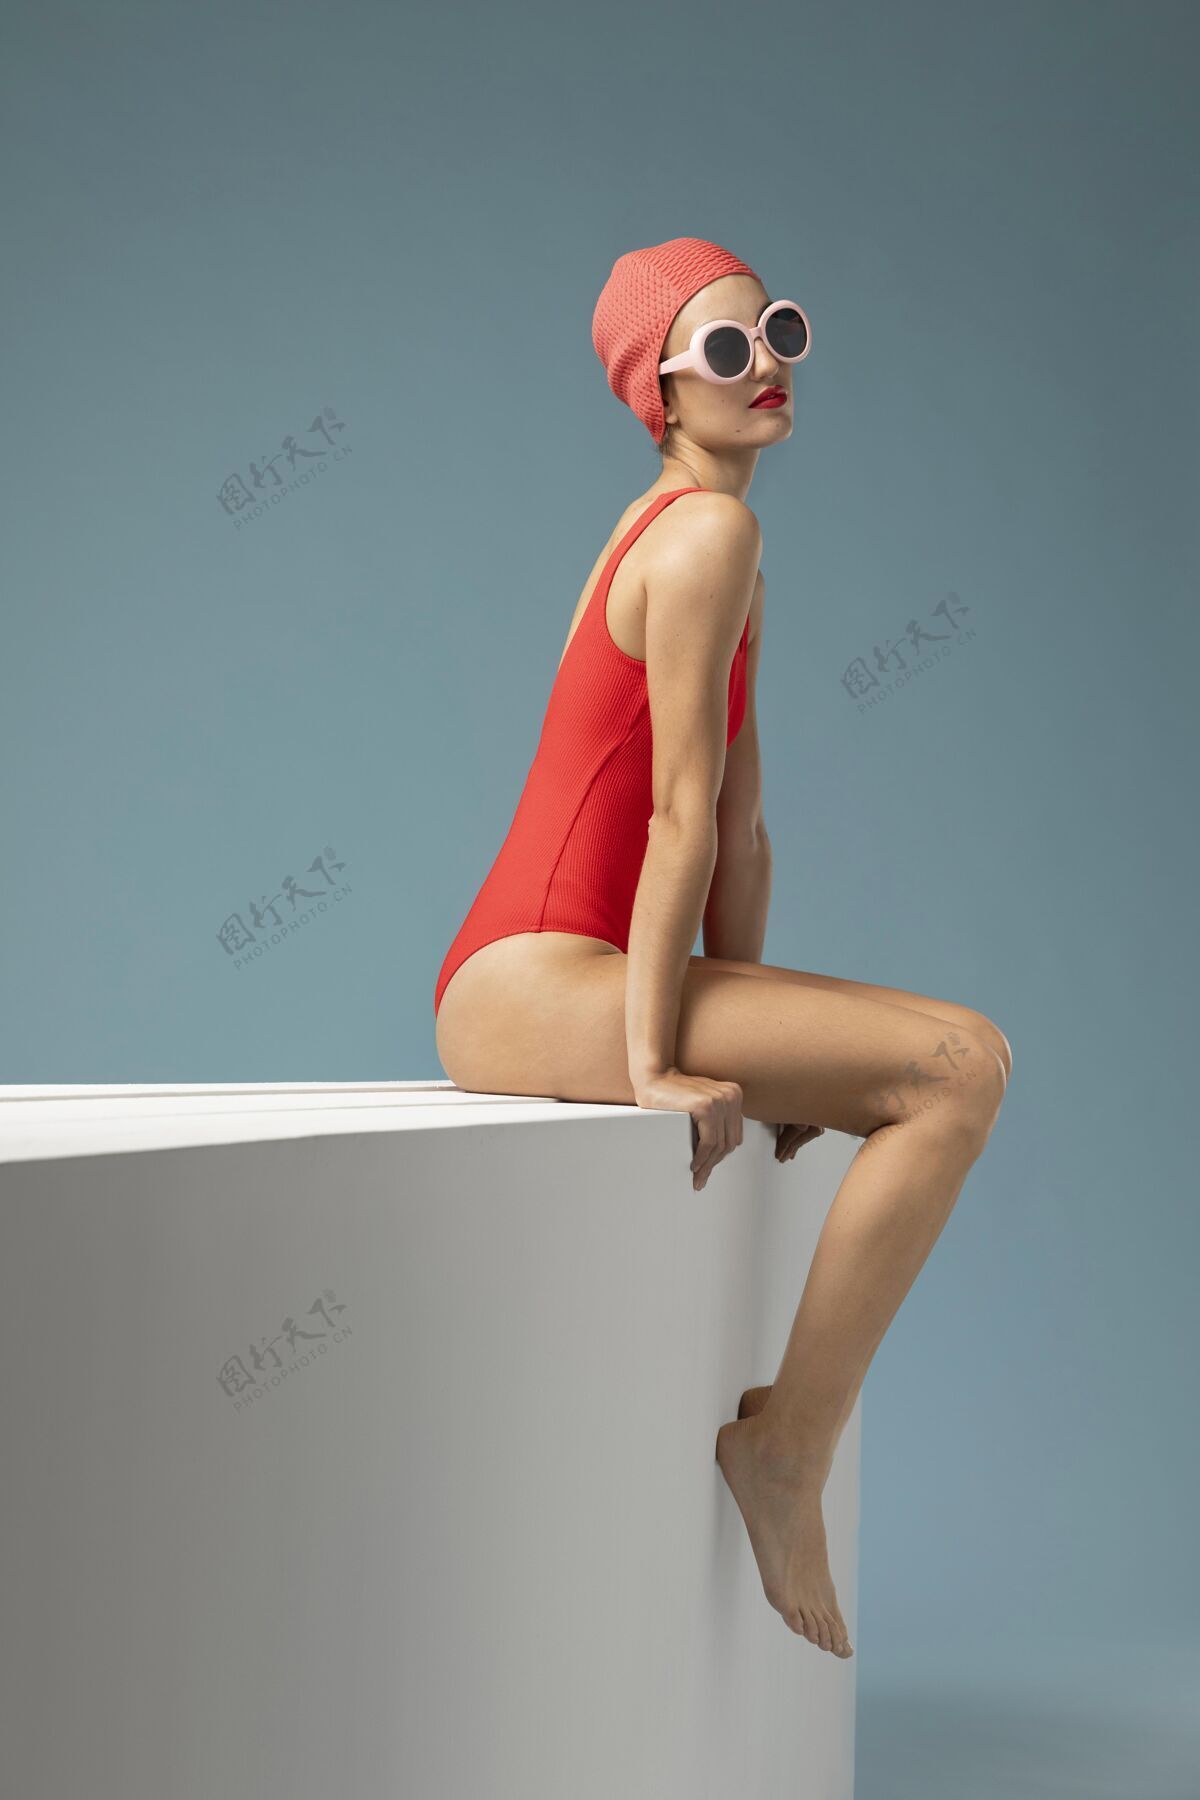 时尚穿红色泳衣的女人模特泳装女人